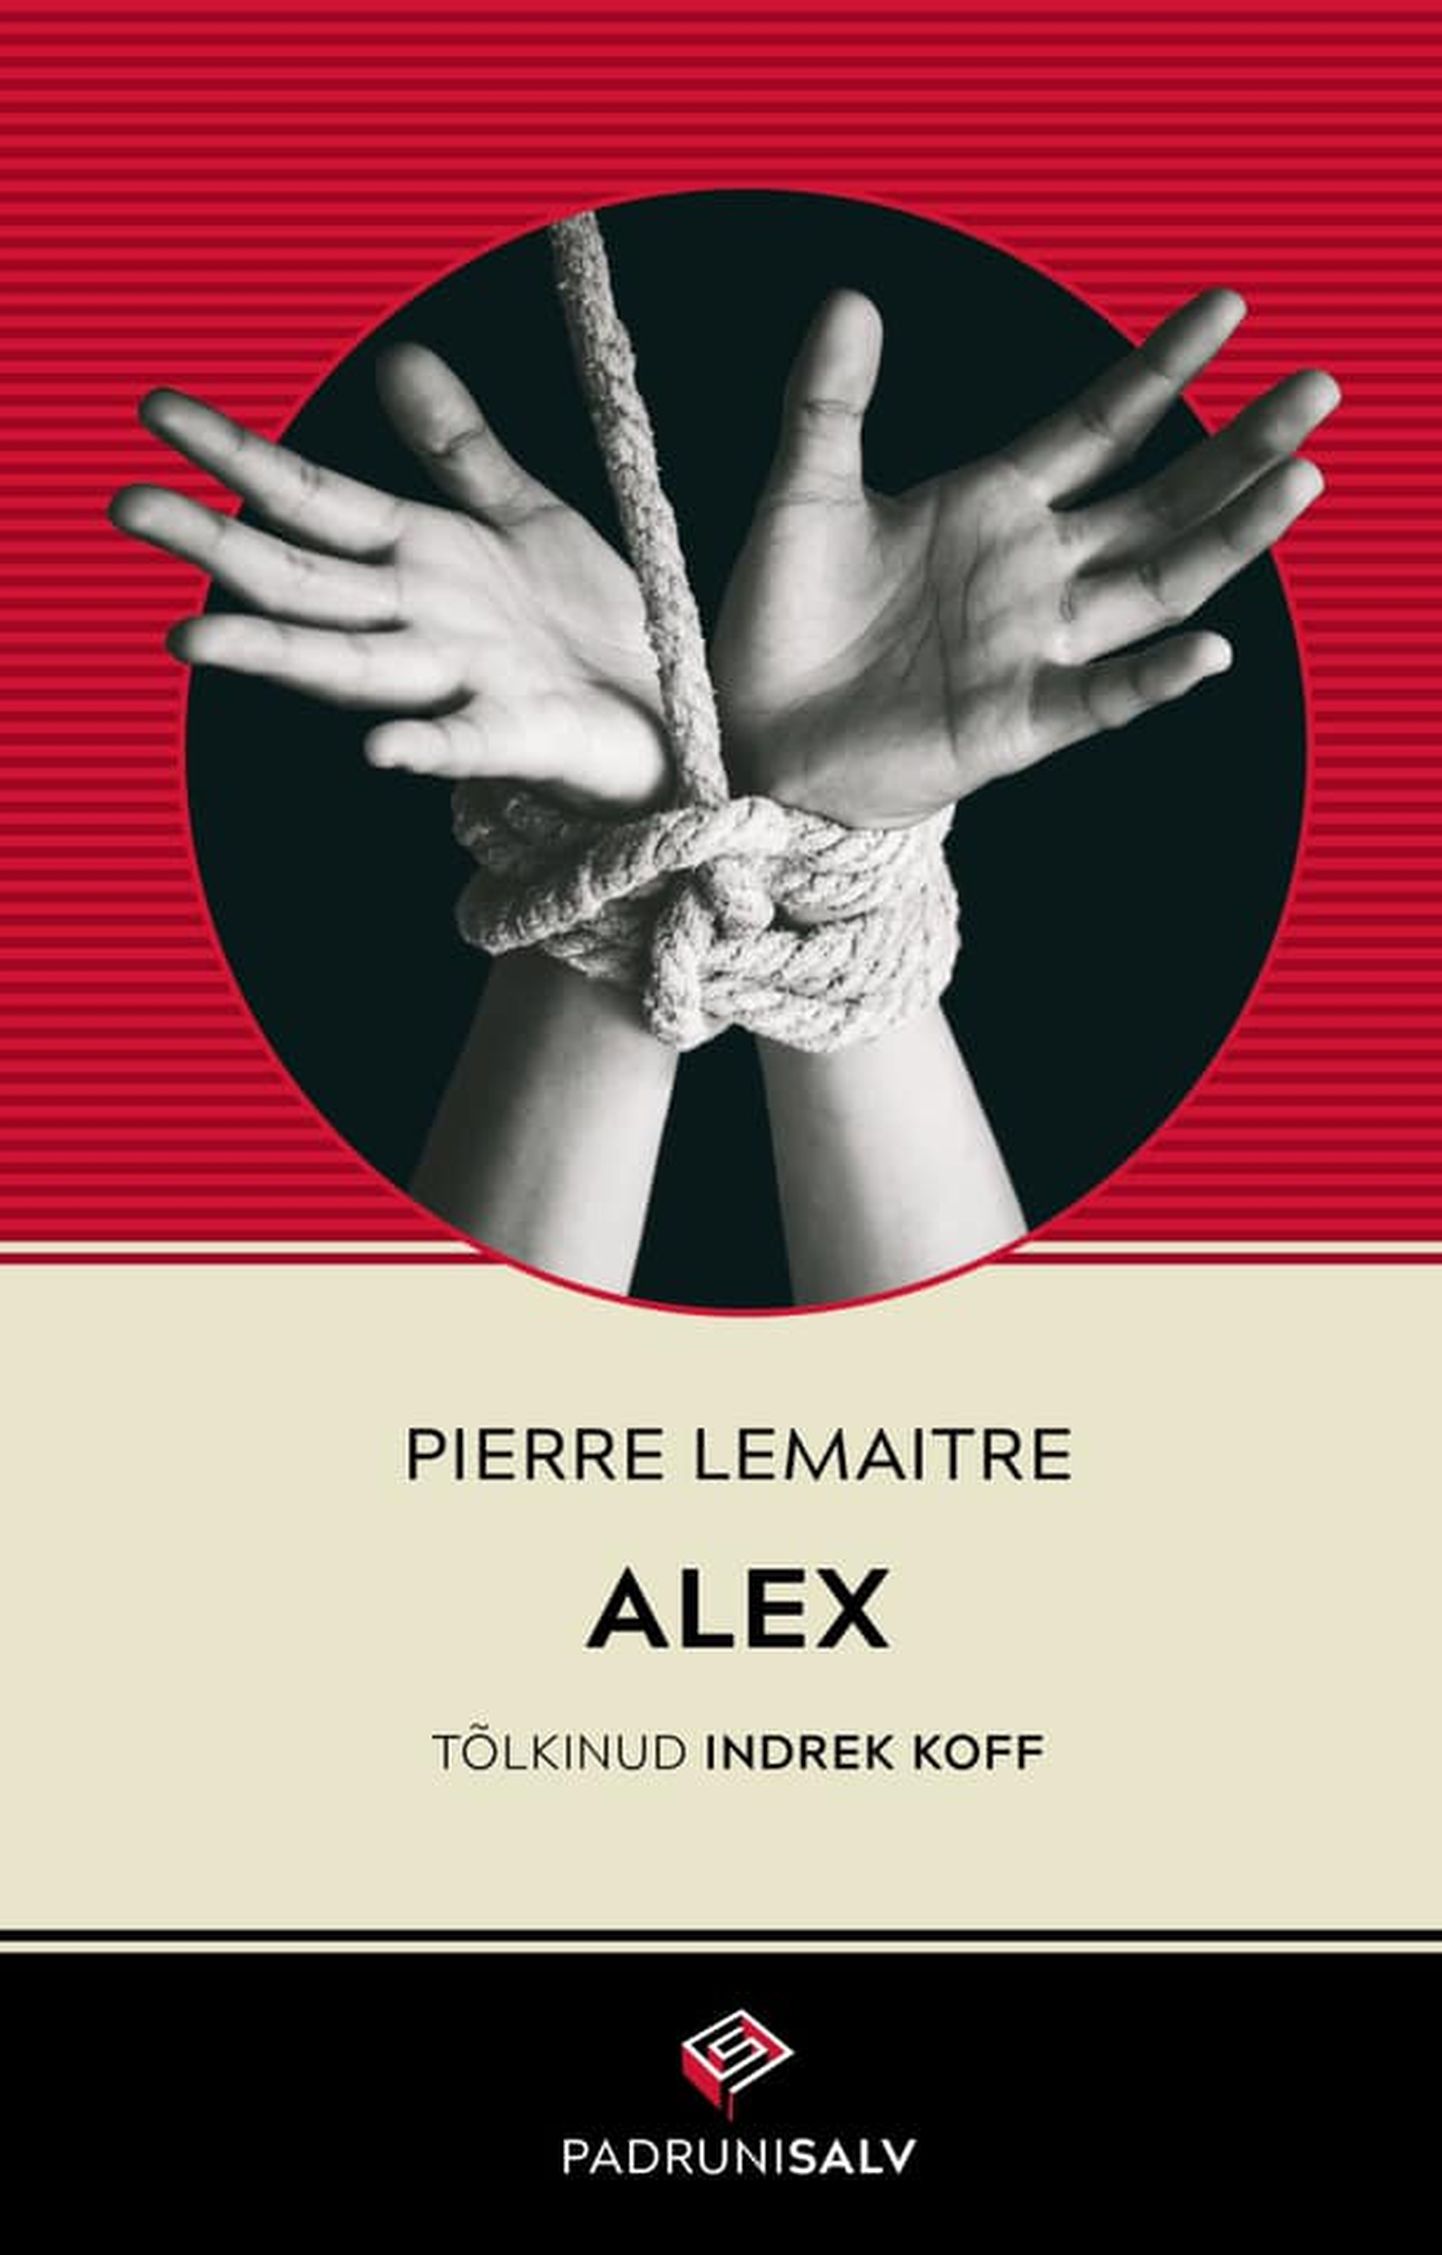 Pierre Lemaitre'i "Alex"